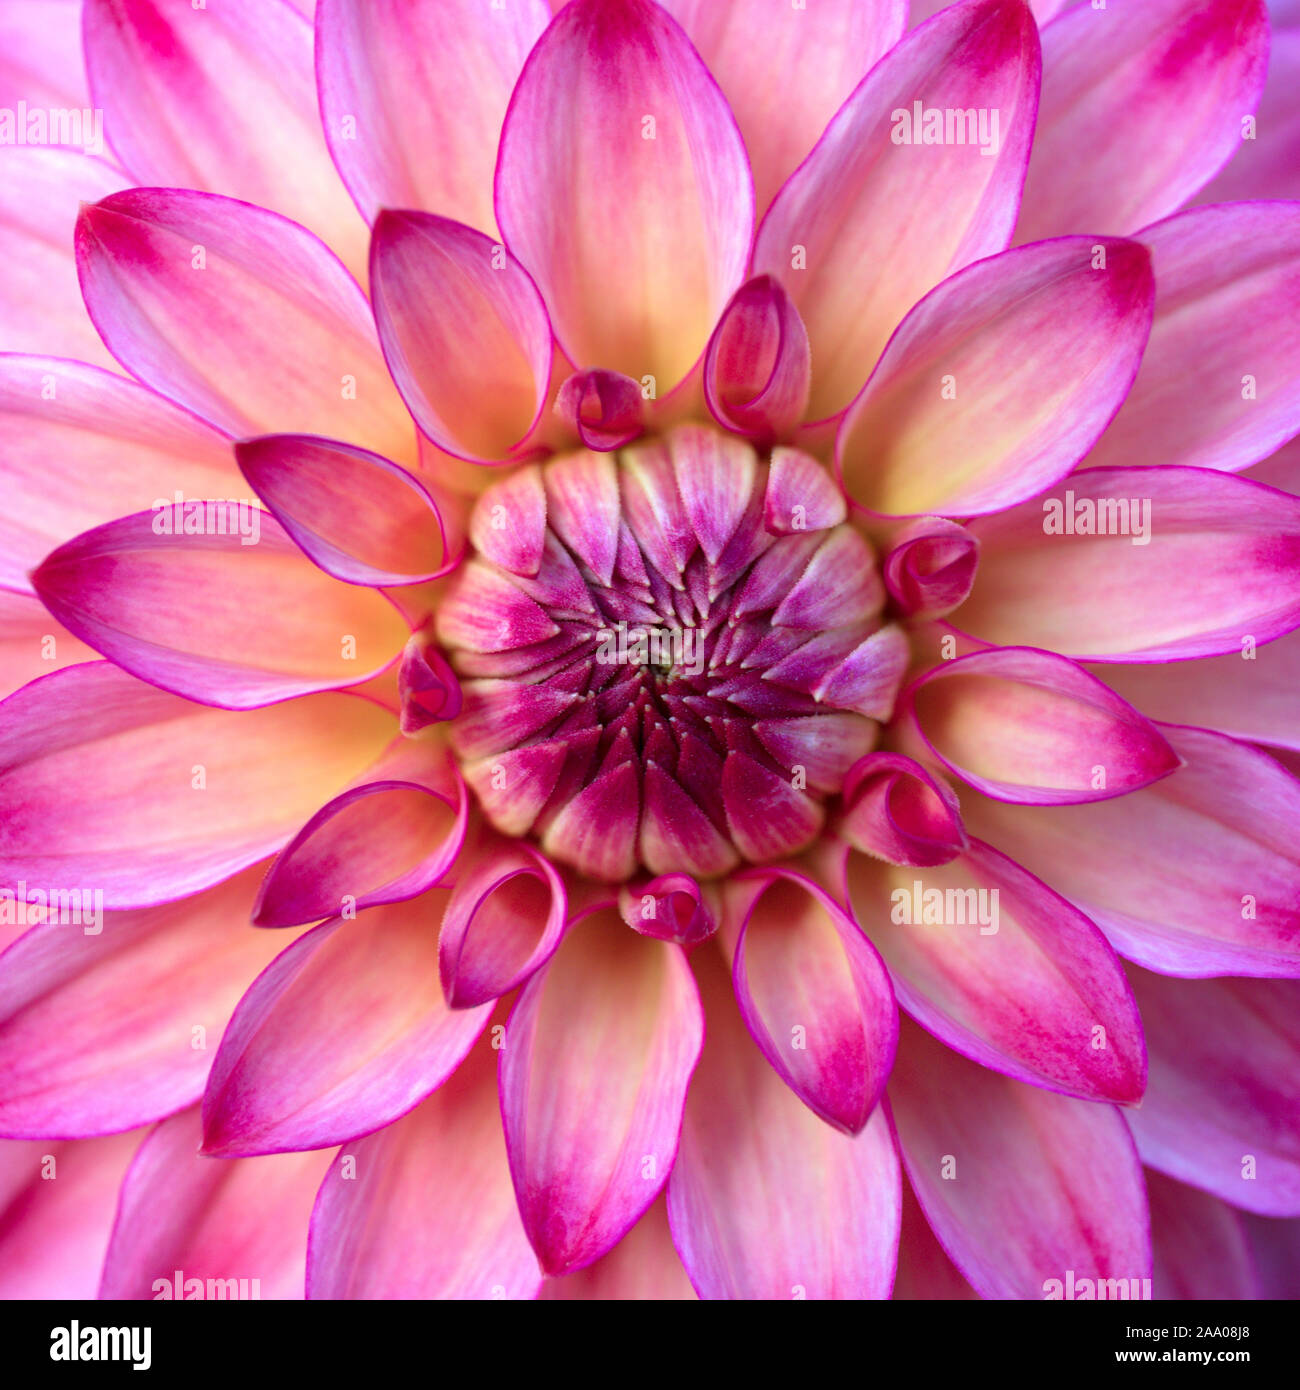 Gros plan de la tête de fleur Dahlia rose Banque D'Images